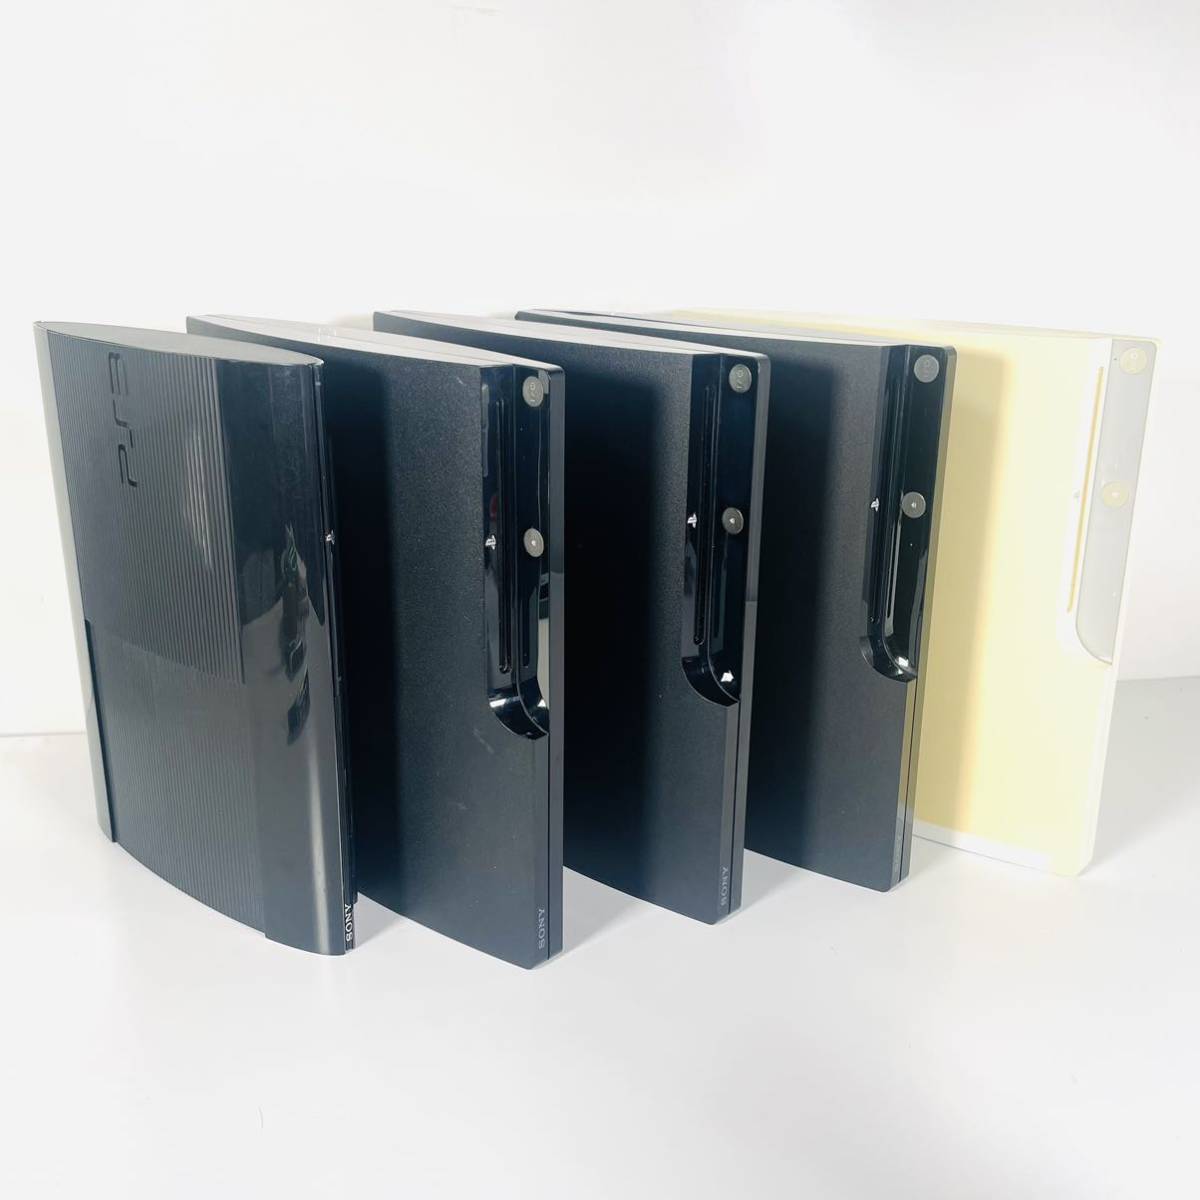 最高の品質 動作品 5台まとめ売り SONY PS3 CECH 薄型 CECH-2000A 3000